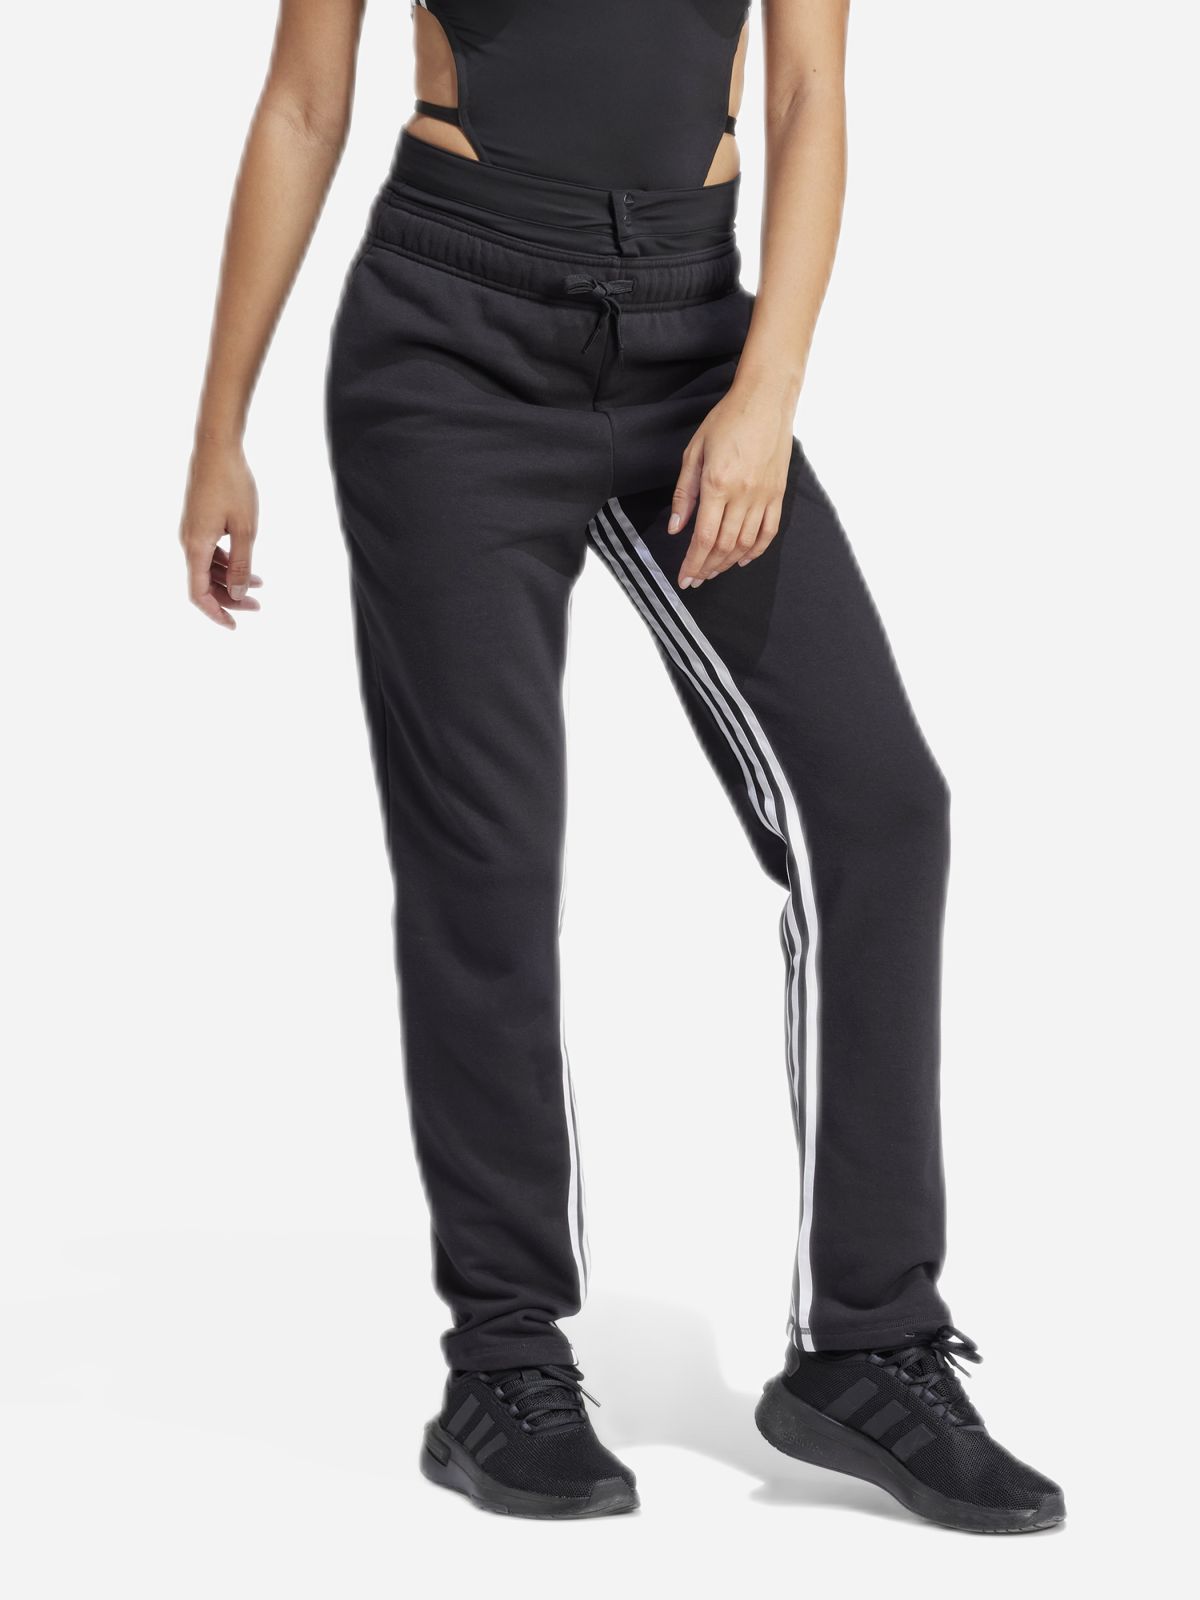  מכנסיים ארוכים עם הדפס לוגו / יוניסקס של ADIDAS Performance